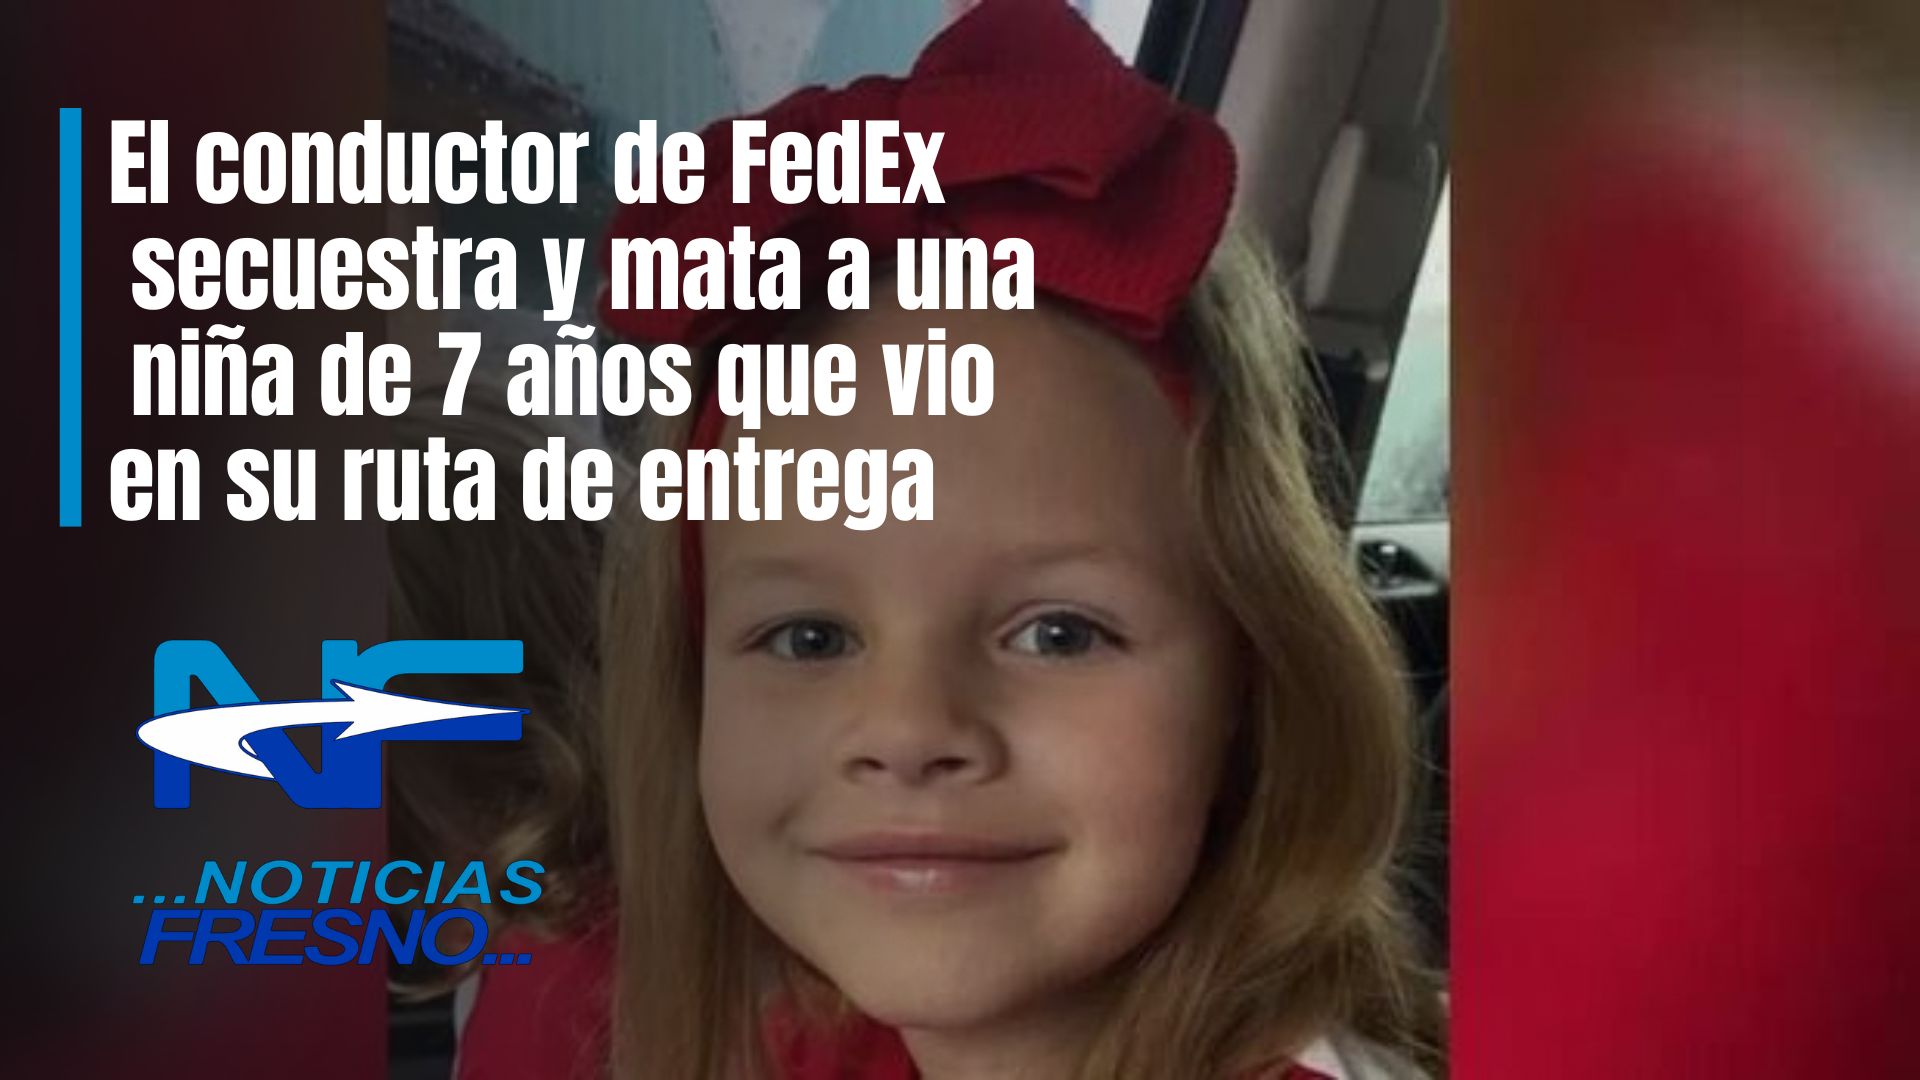 El Conductor De Fedex Secuestra Y Mata A Una Niña De 7 Años Que Vio En Su Ruta De Entrega Dice 0912